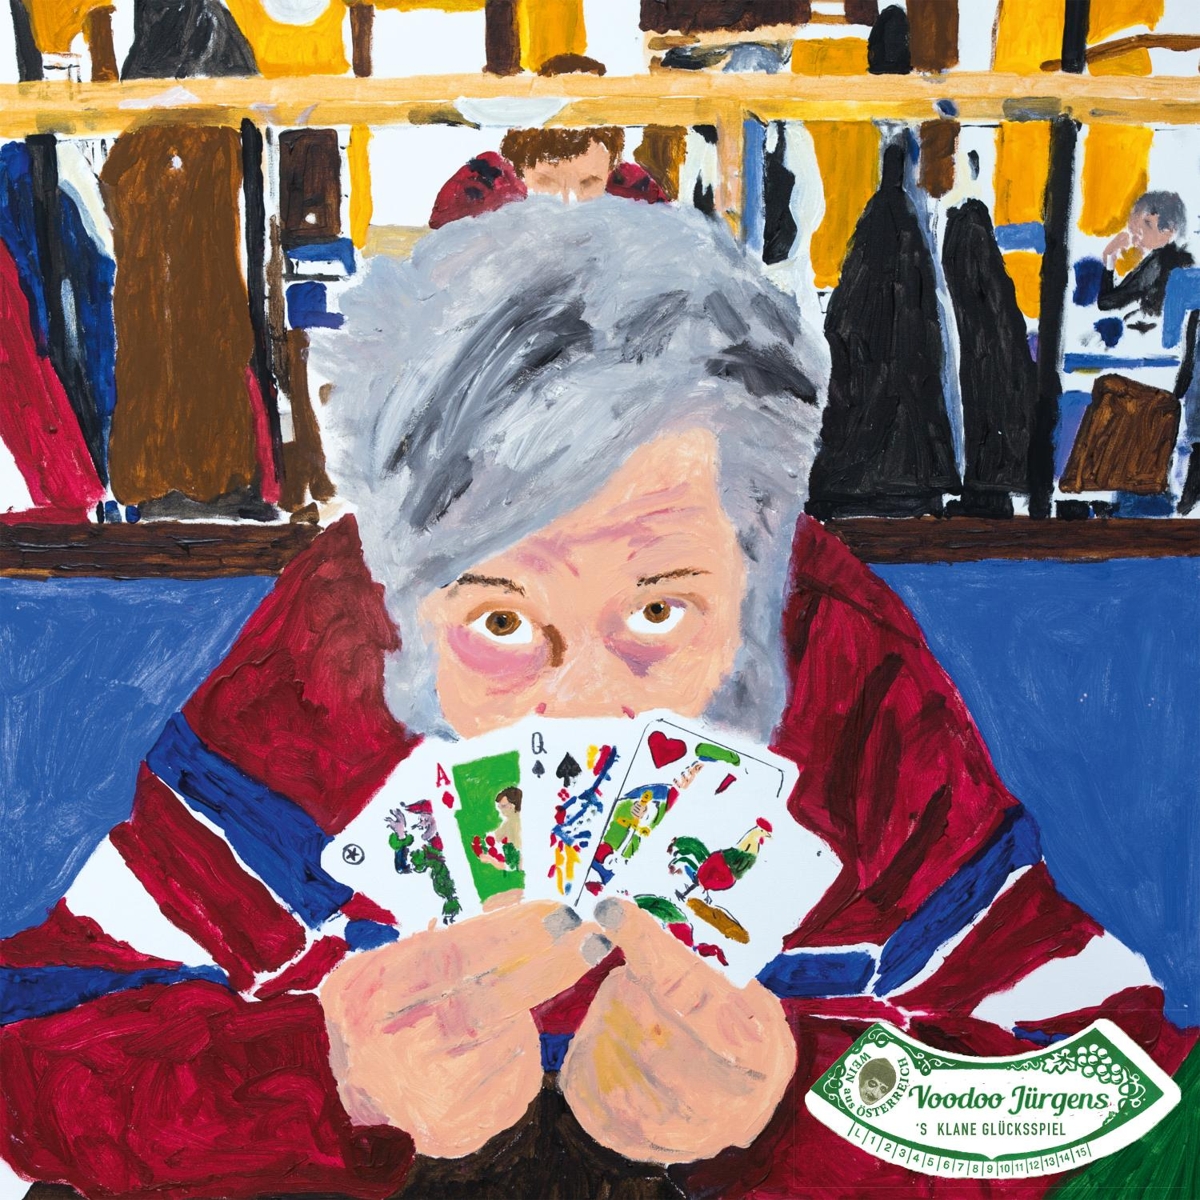 Voodoo Jürgens / 'S klane Glücksspiel (Bummerl Edition) - Bild 1 von 1